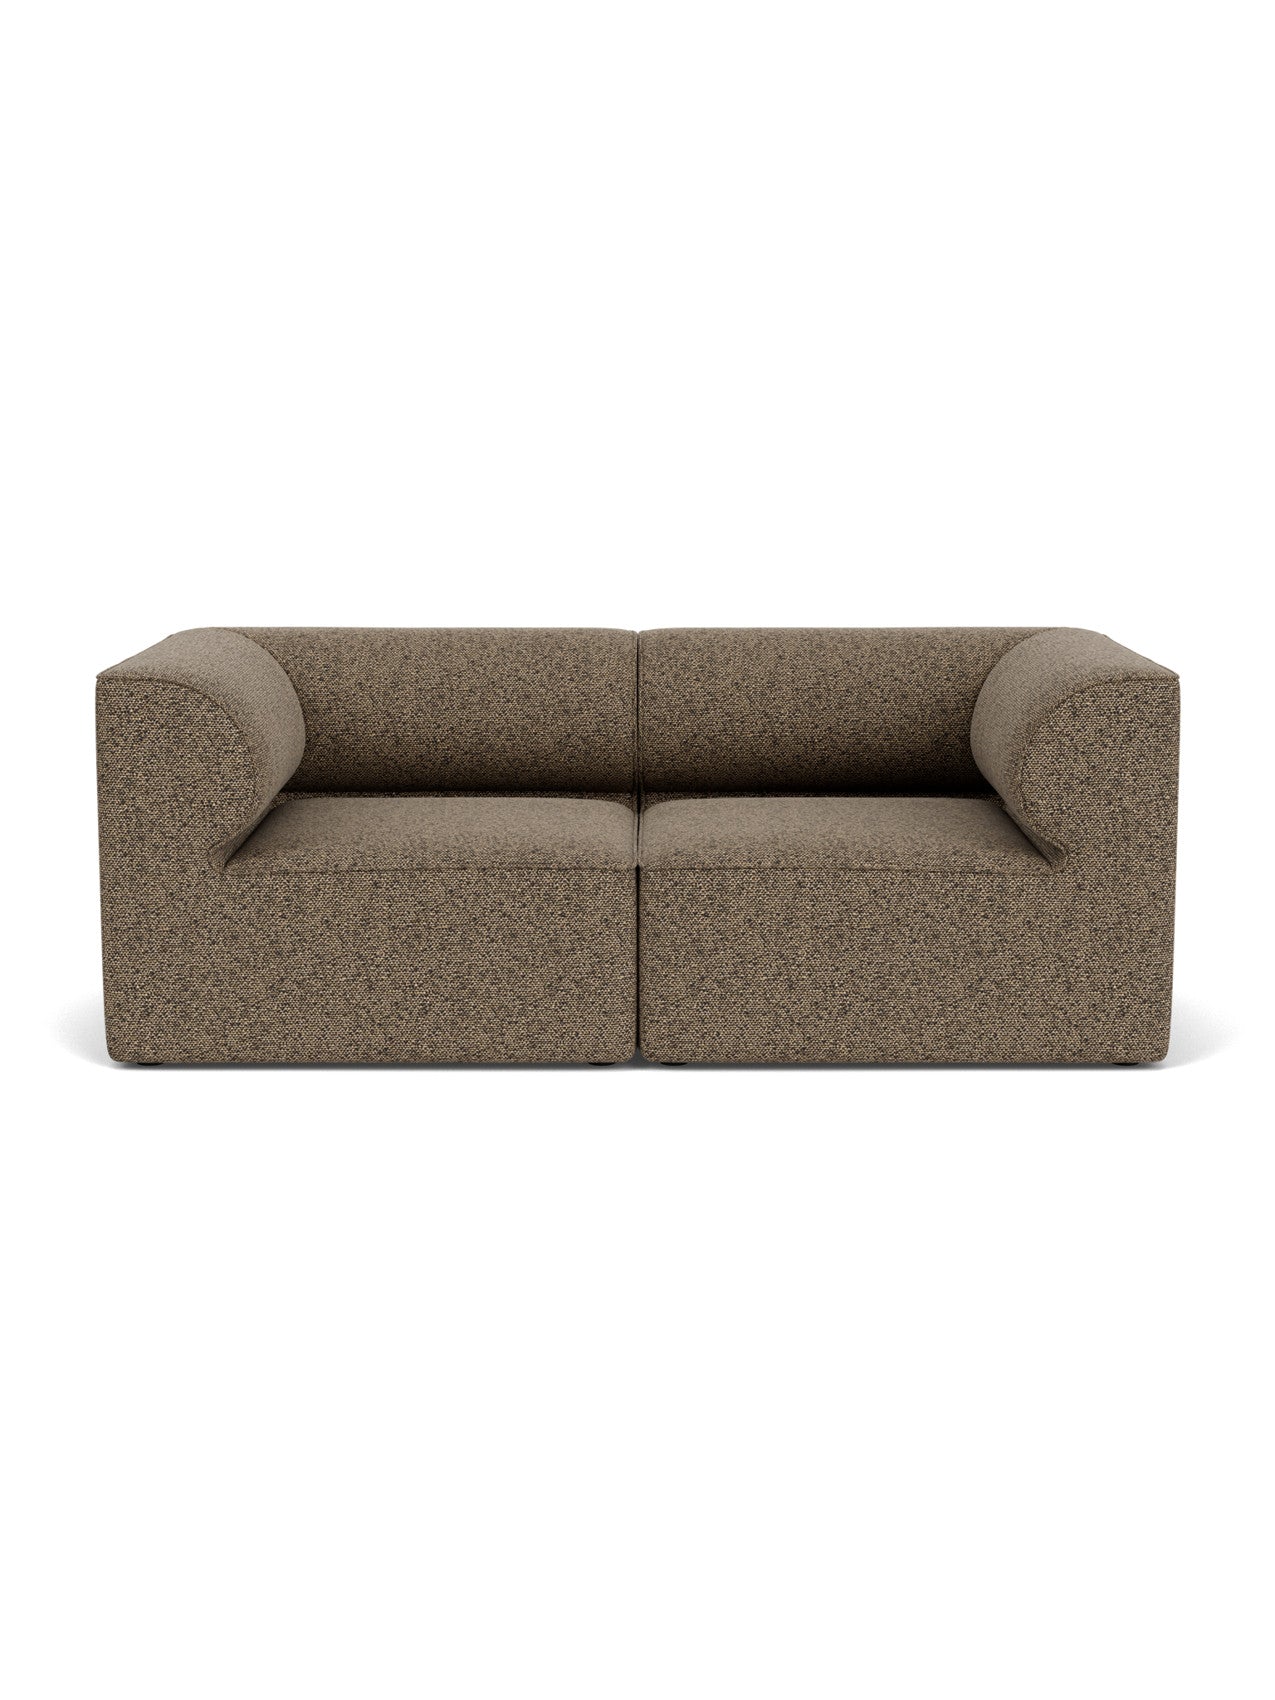 Eave Modular Sofa, 2-seater, Configuration 1